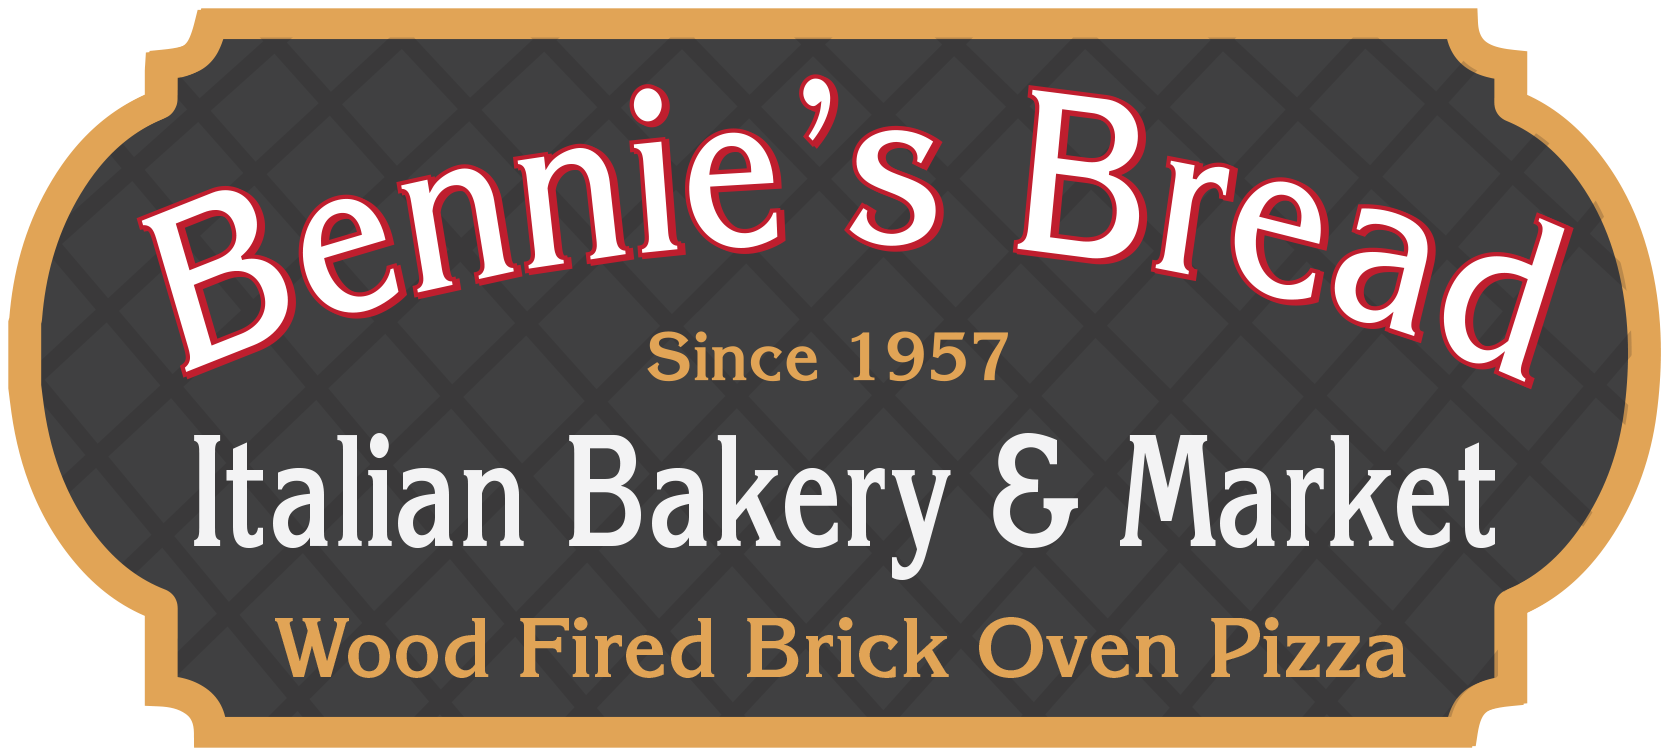 Bennie's Bread